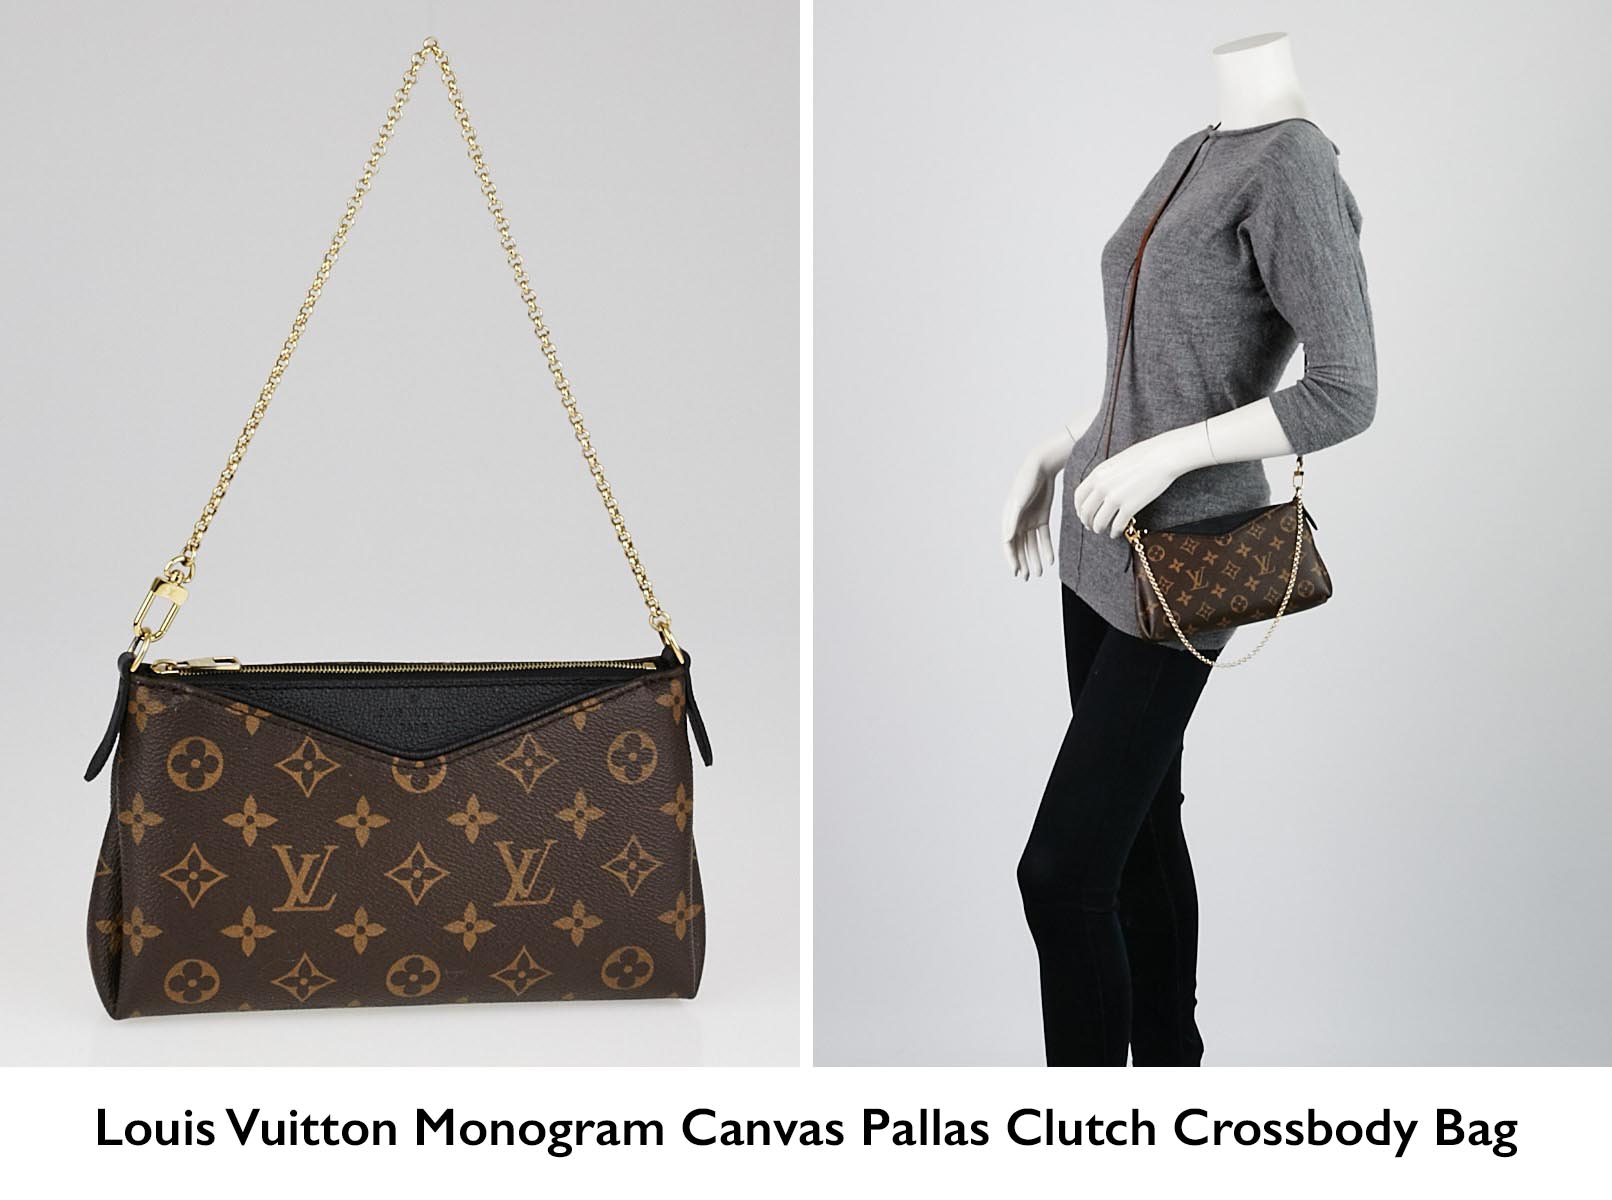 Authentic Louis Vuitton Monogram Canvas Pallas Clutch Crossbody Bag | YoogisCloset.com